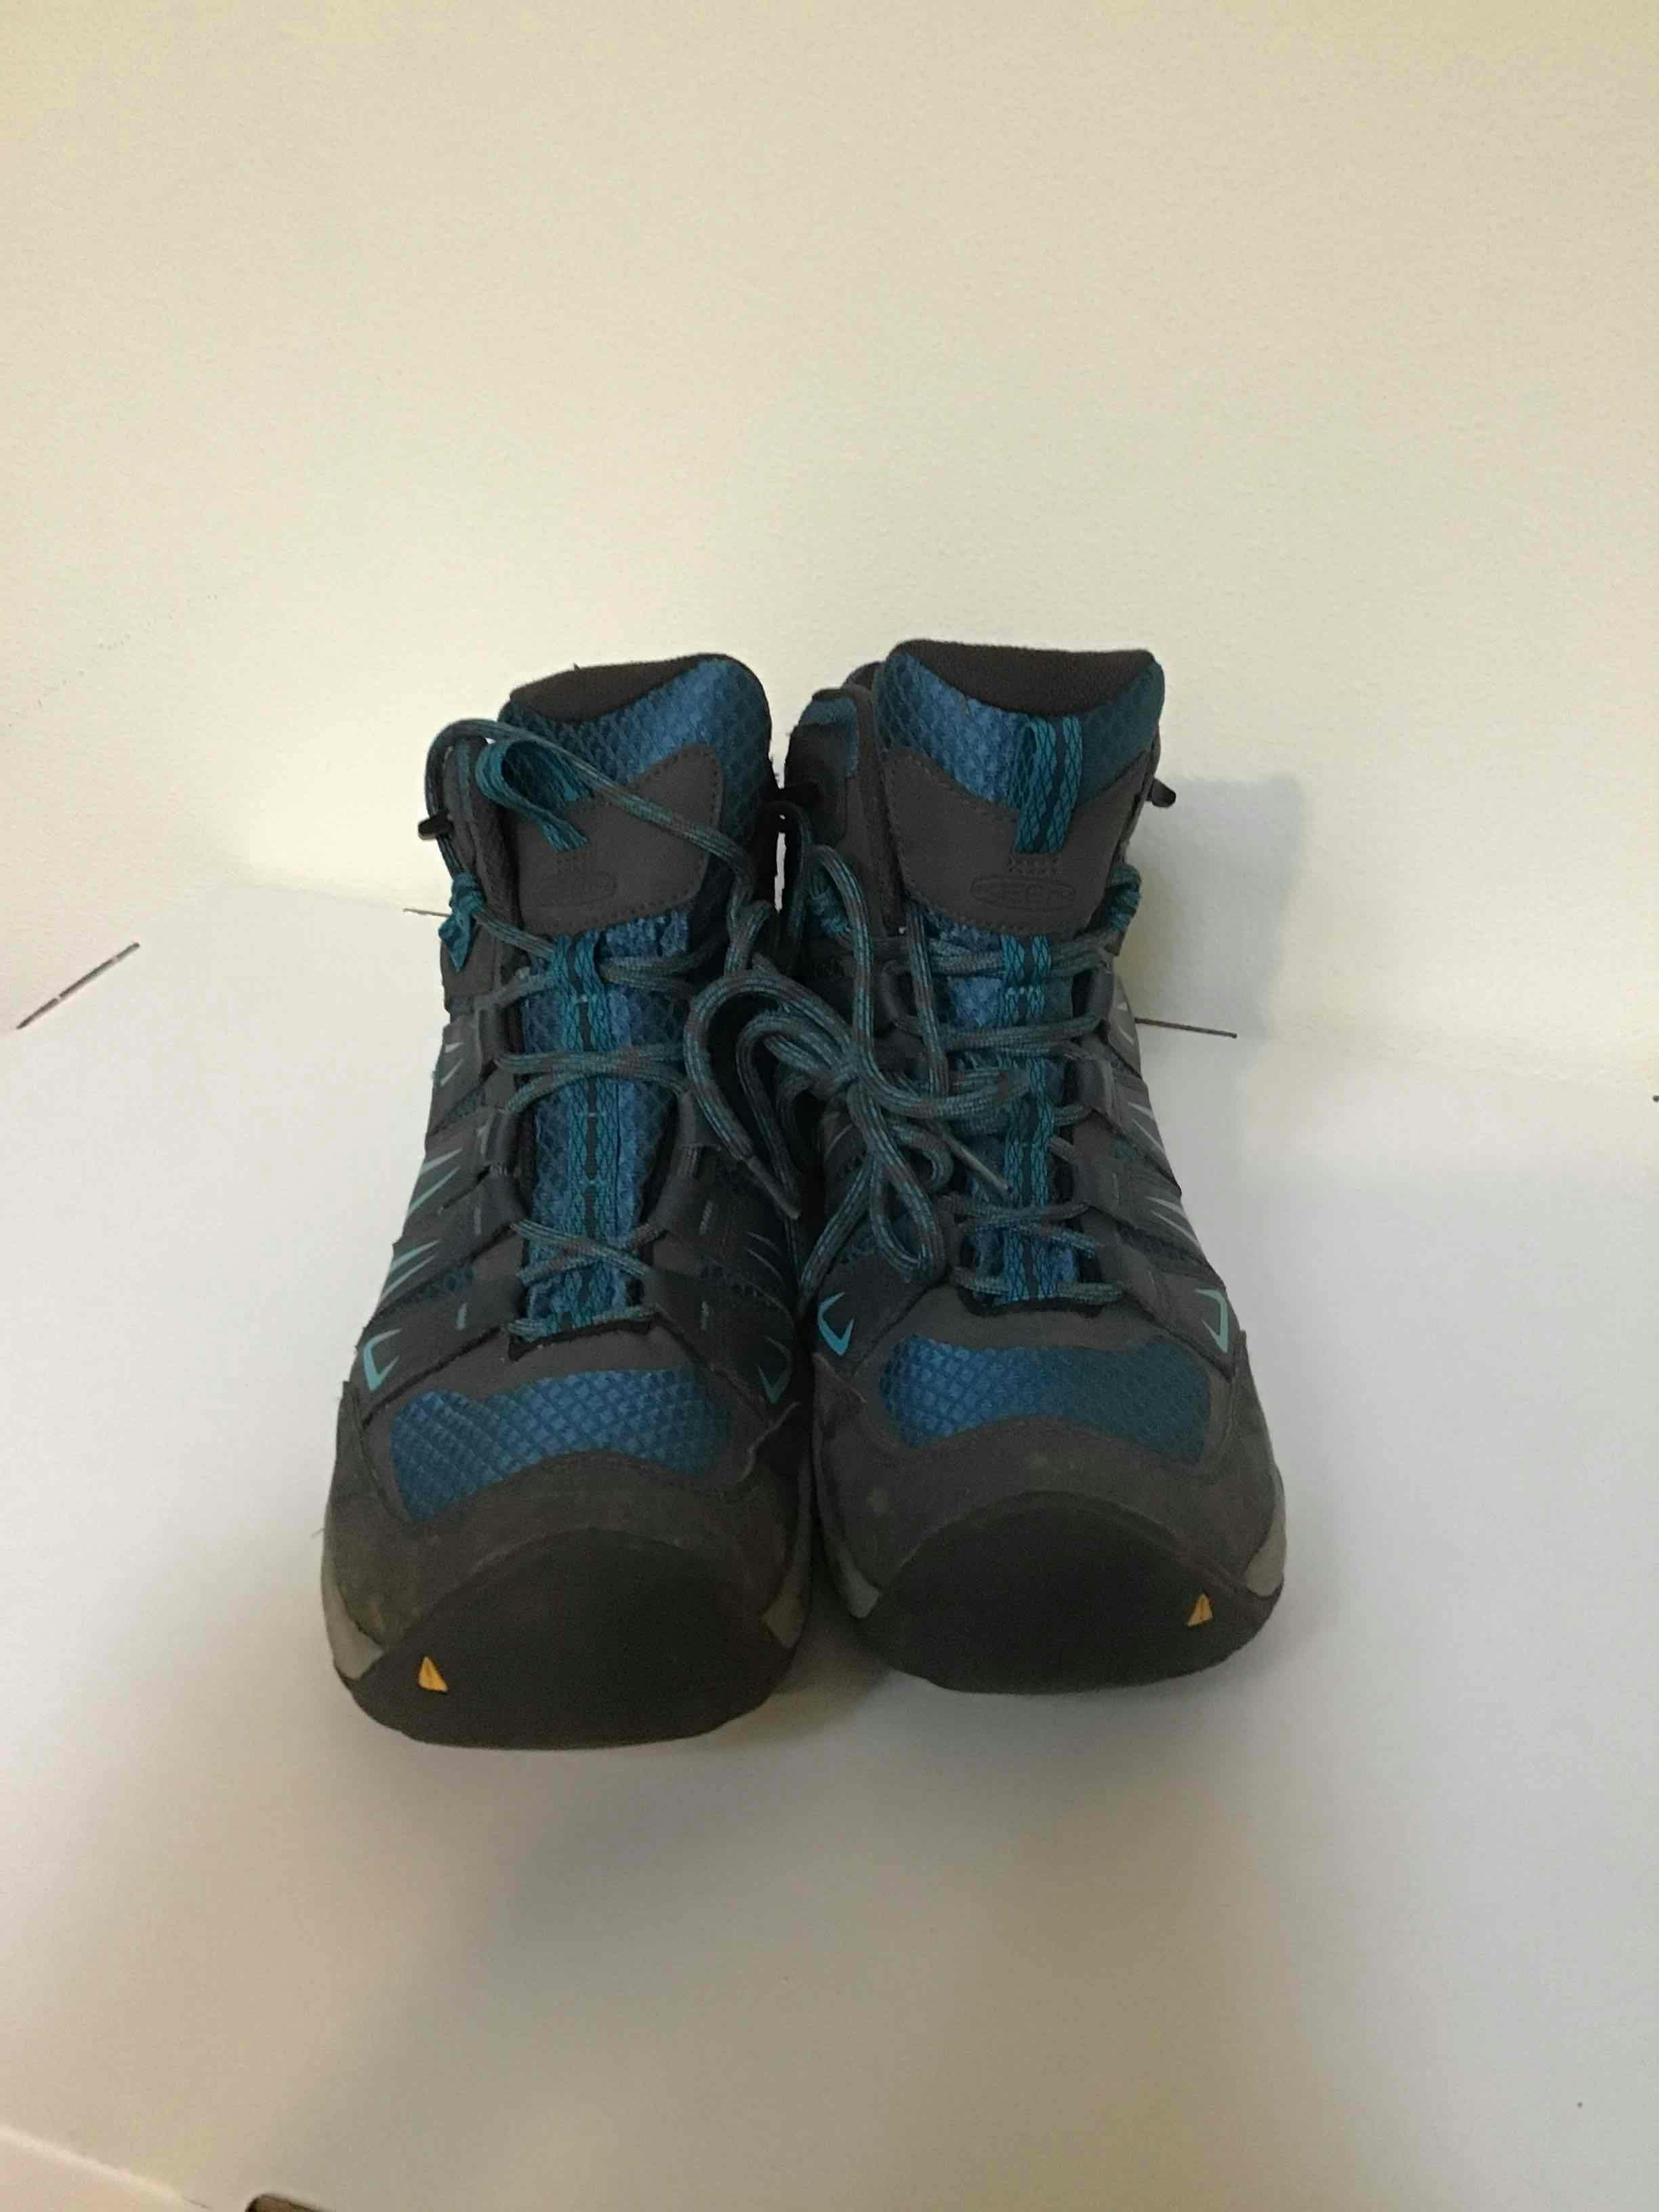  Keen Mid Waterproof Hiking Boots - Men's 11